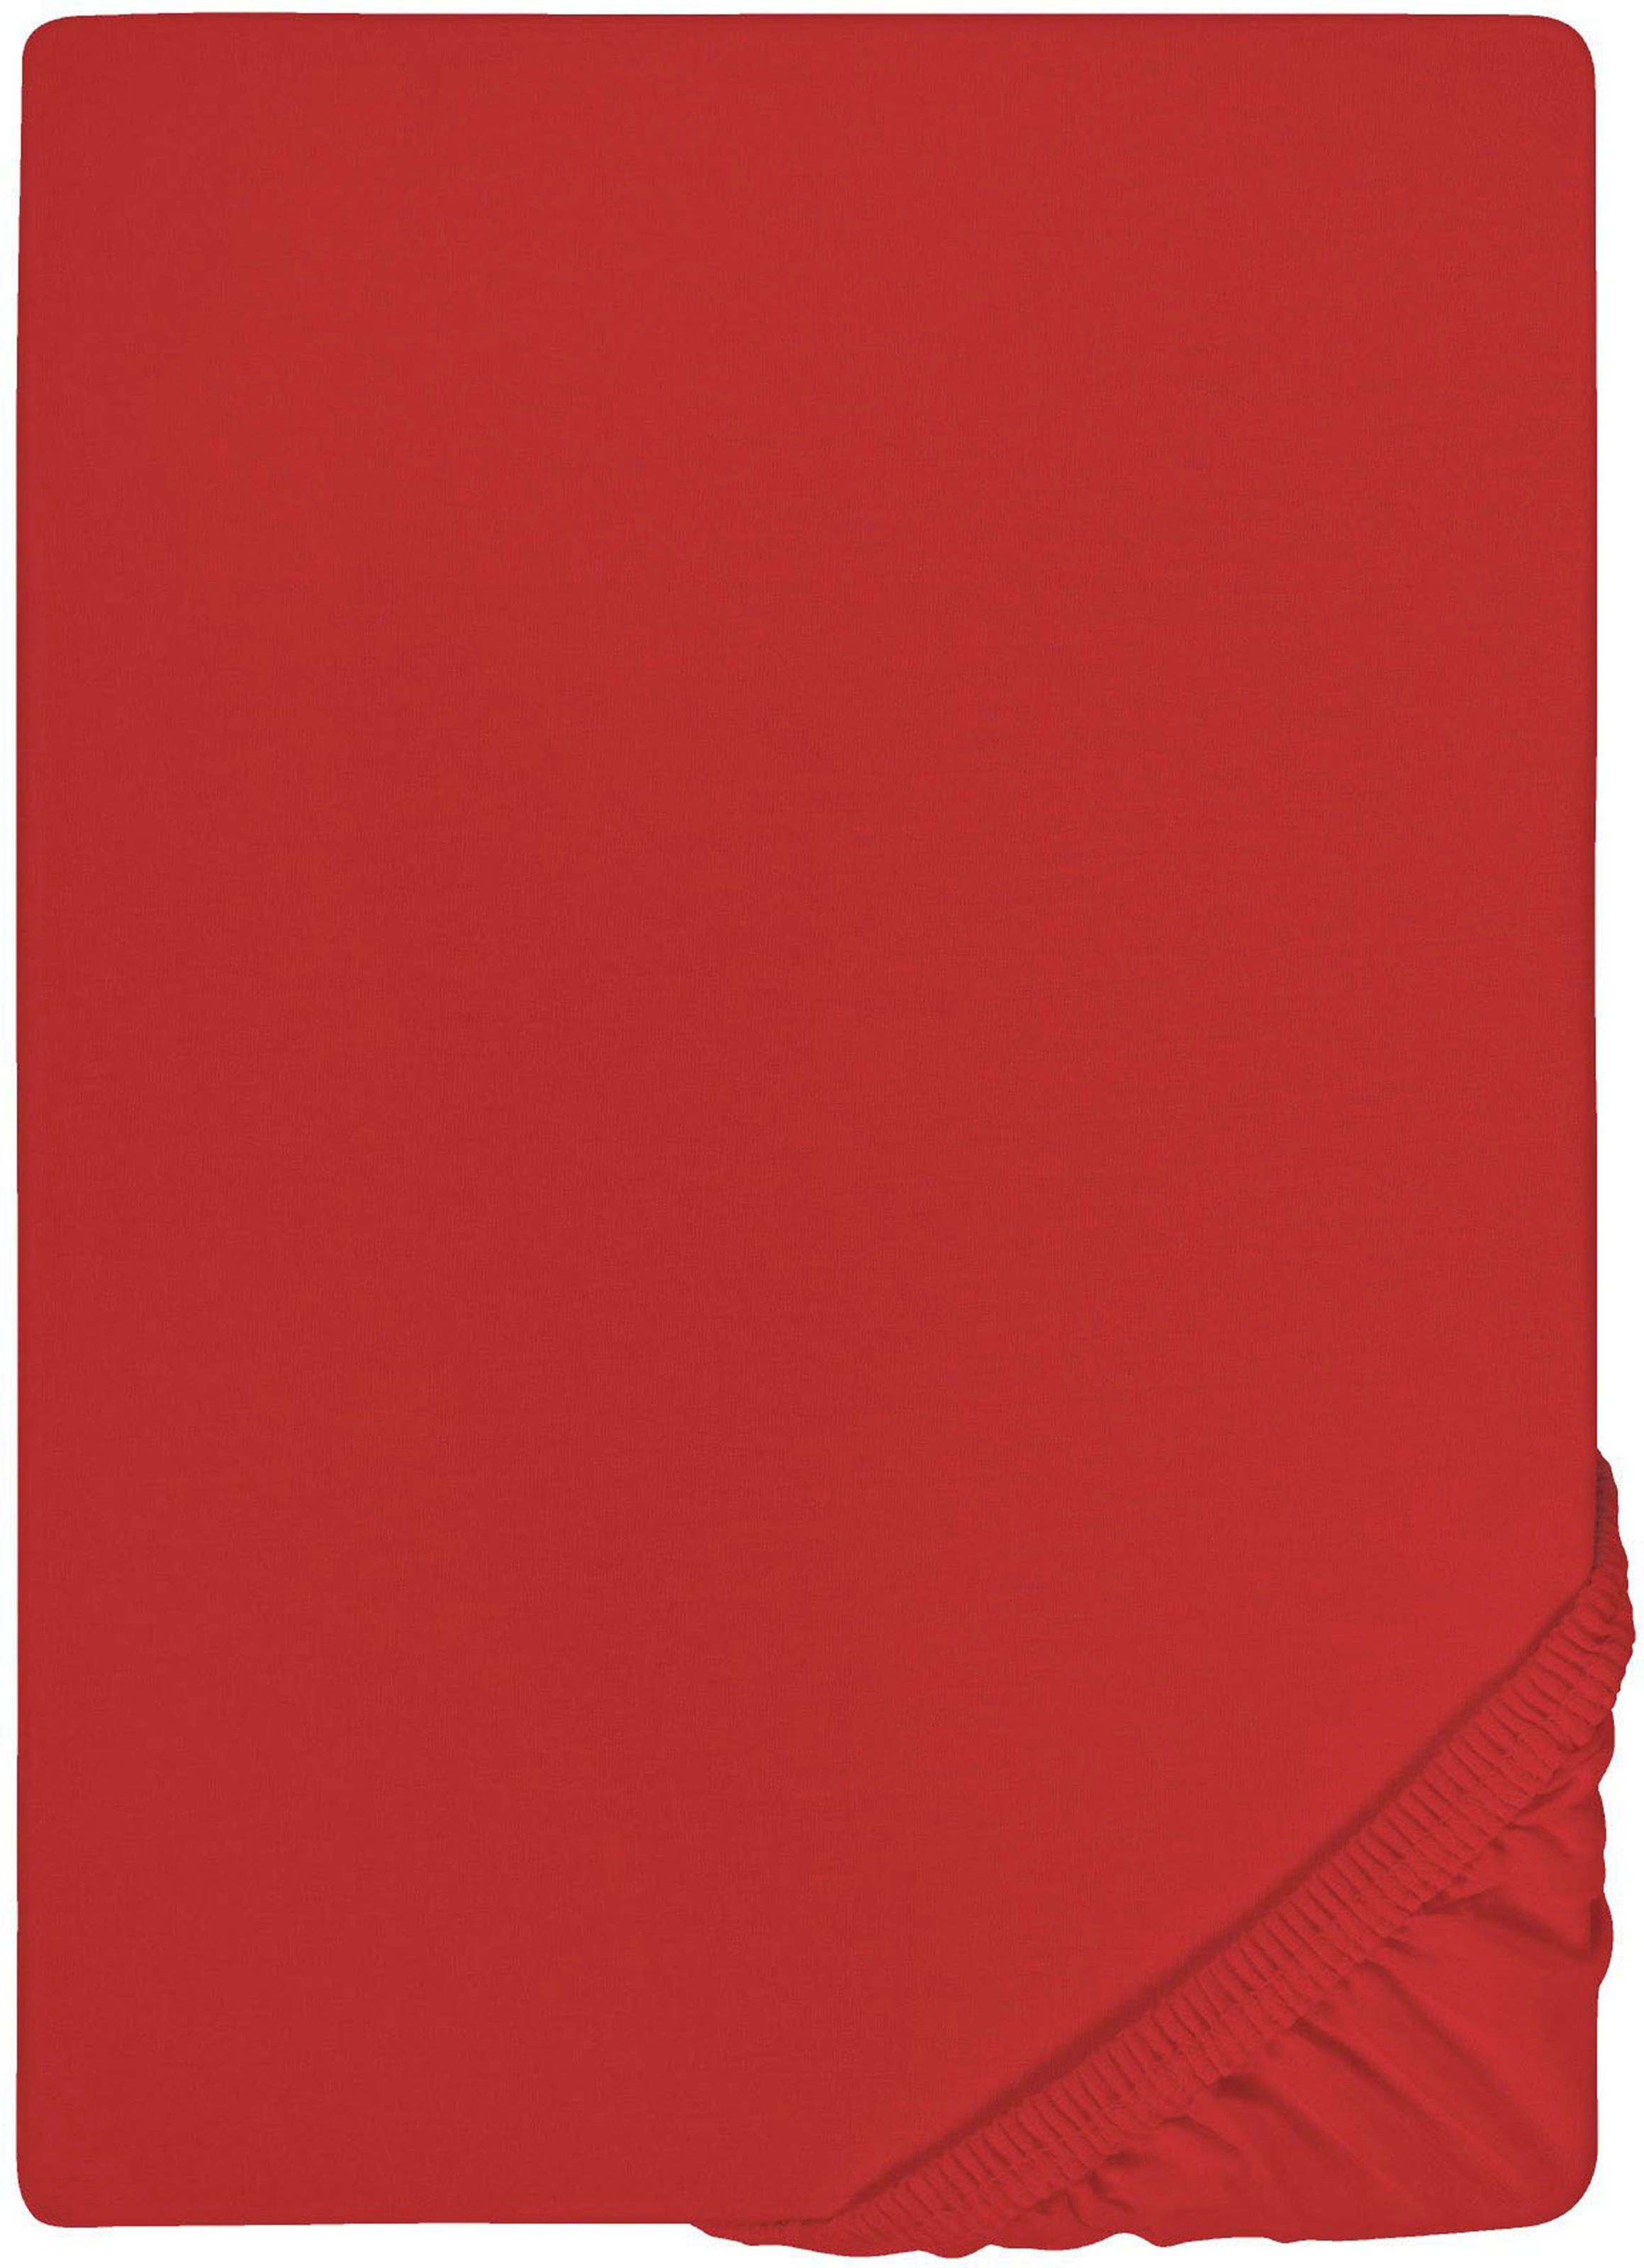 Biberna Spannbettlaken »Thea in Gr. 90x220, 140x220 oder 180x220 cm«, aus Baumwolle, für Matratzen bis 25 cm Höhe, Bettlaken, Spannbetttuch